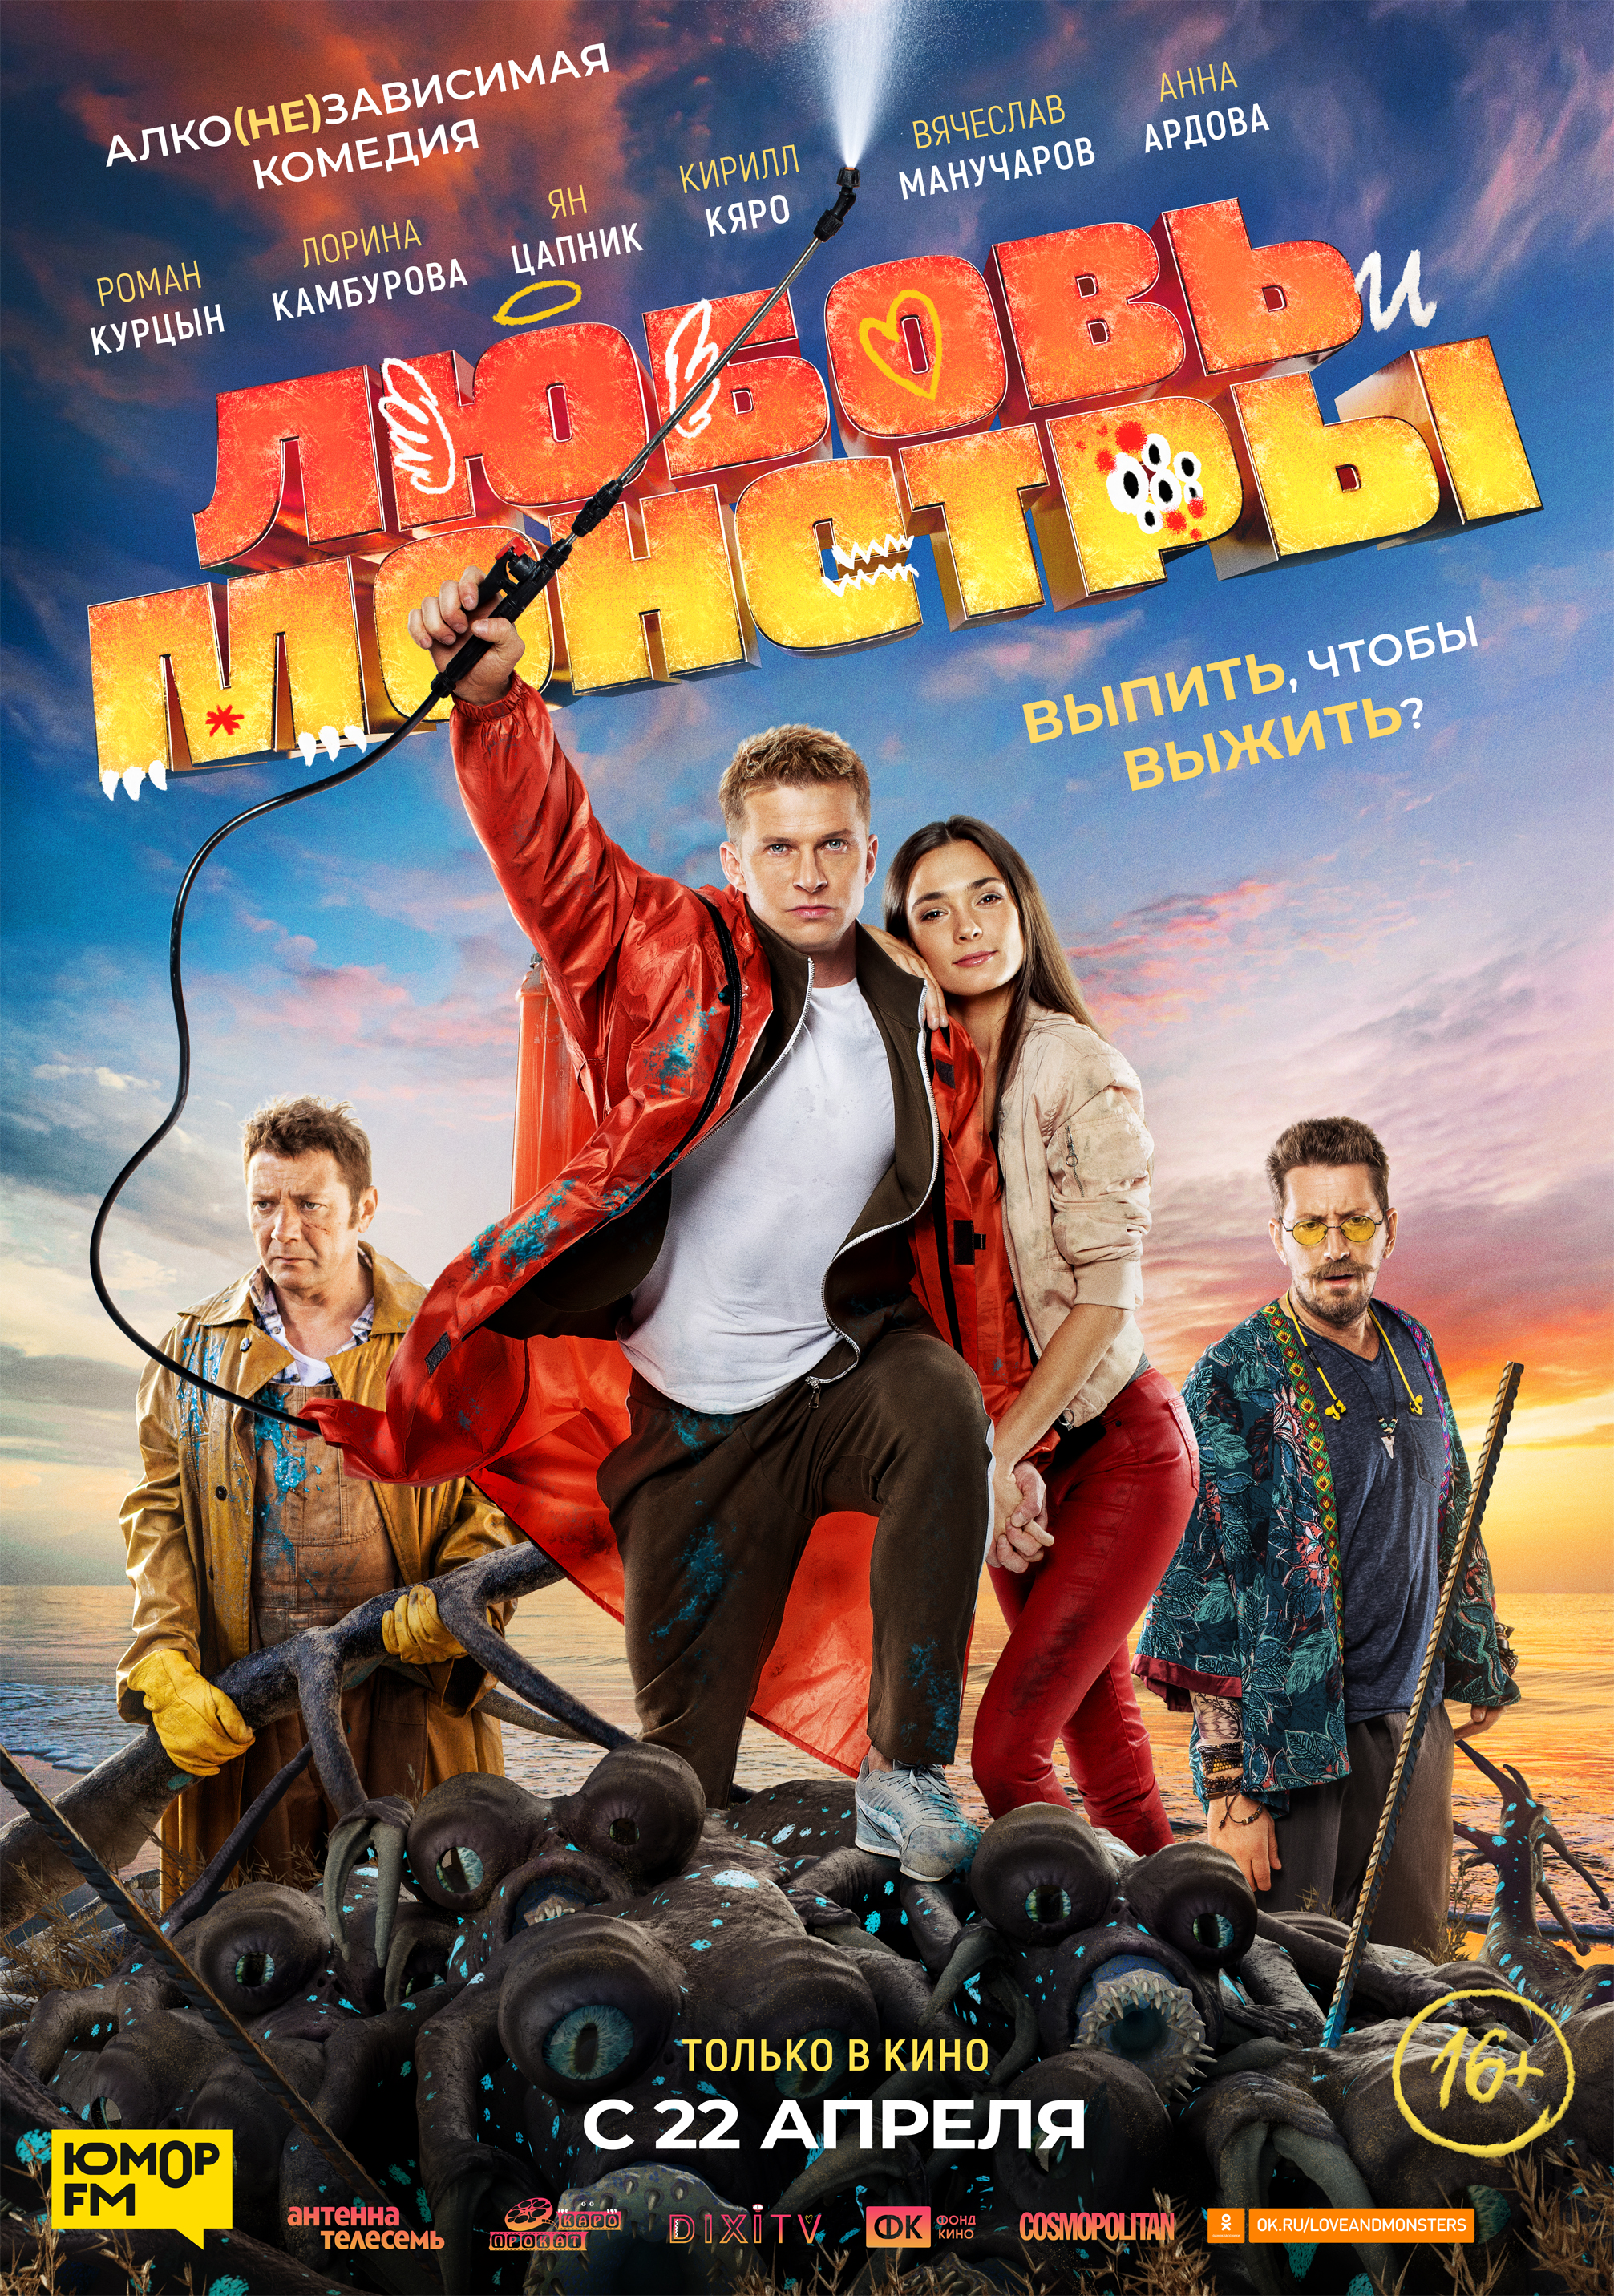 Российская комедия любовь. Любовь и монстры 2021. Любовь и монстры 2020 Россия.